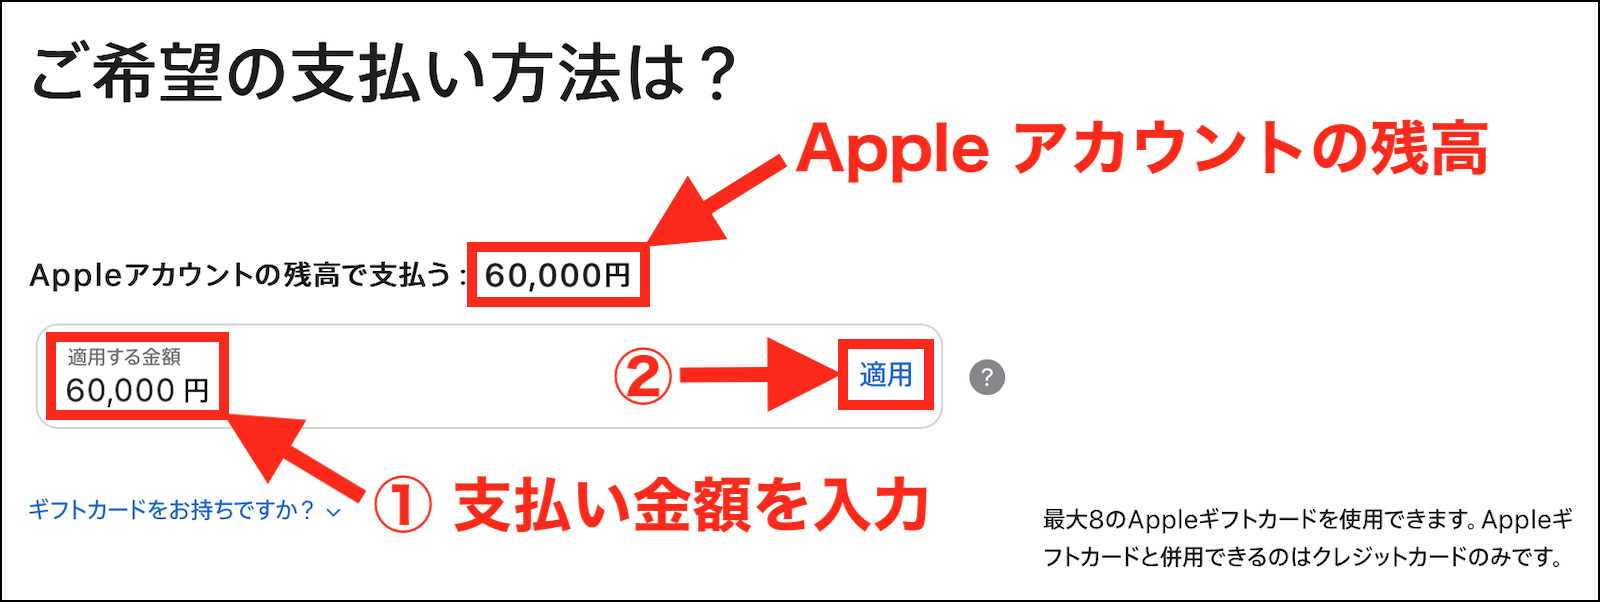 ギフトカード18000円分どこに表示さ… - Apple コミュニティ